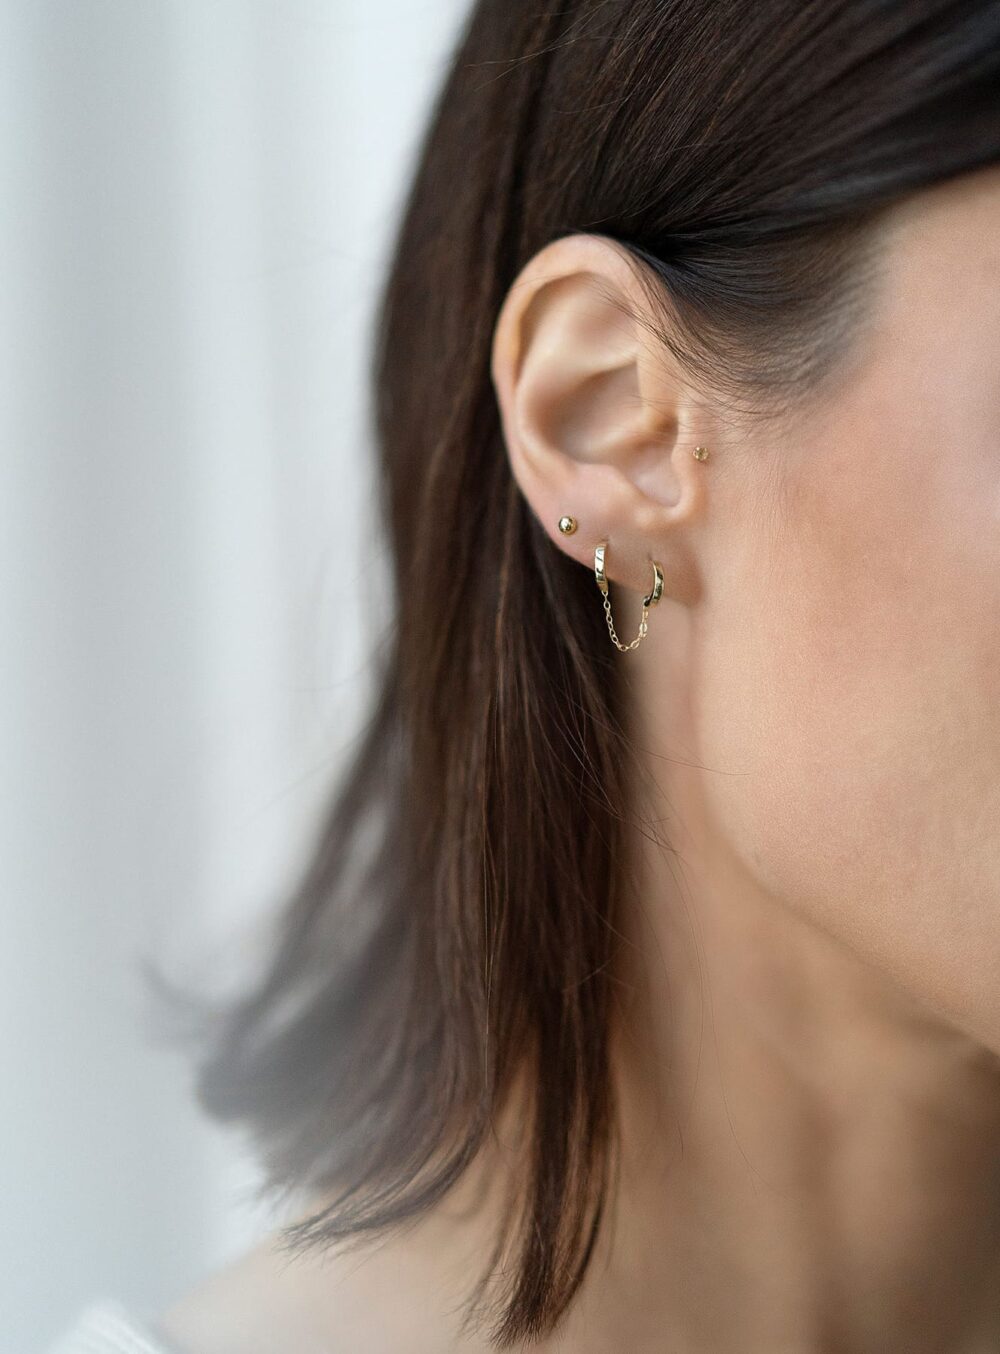 Tania earrings